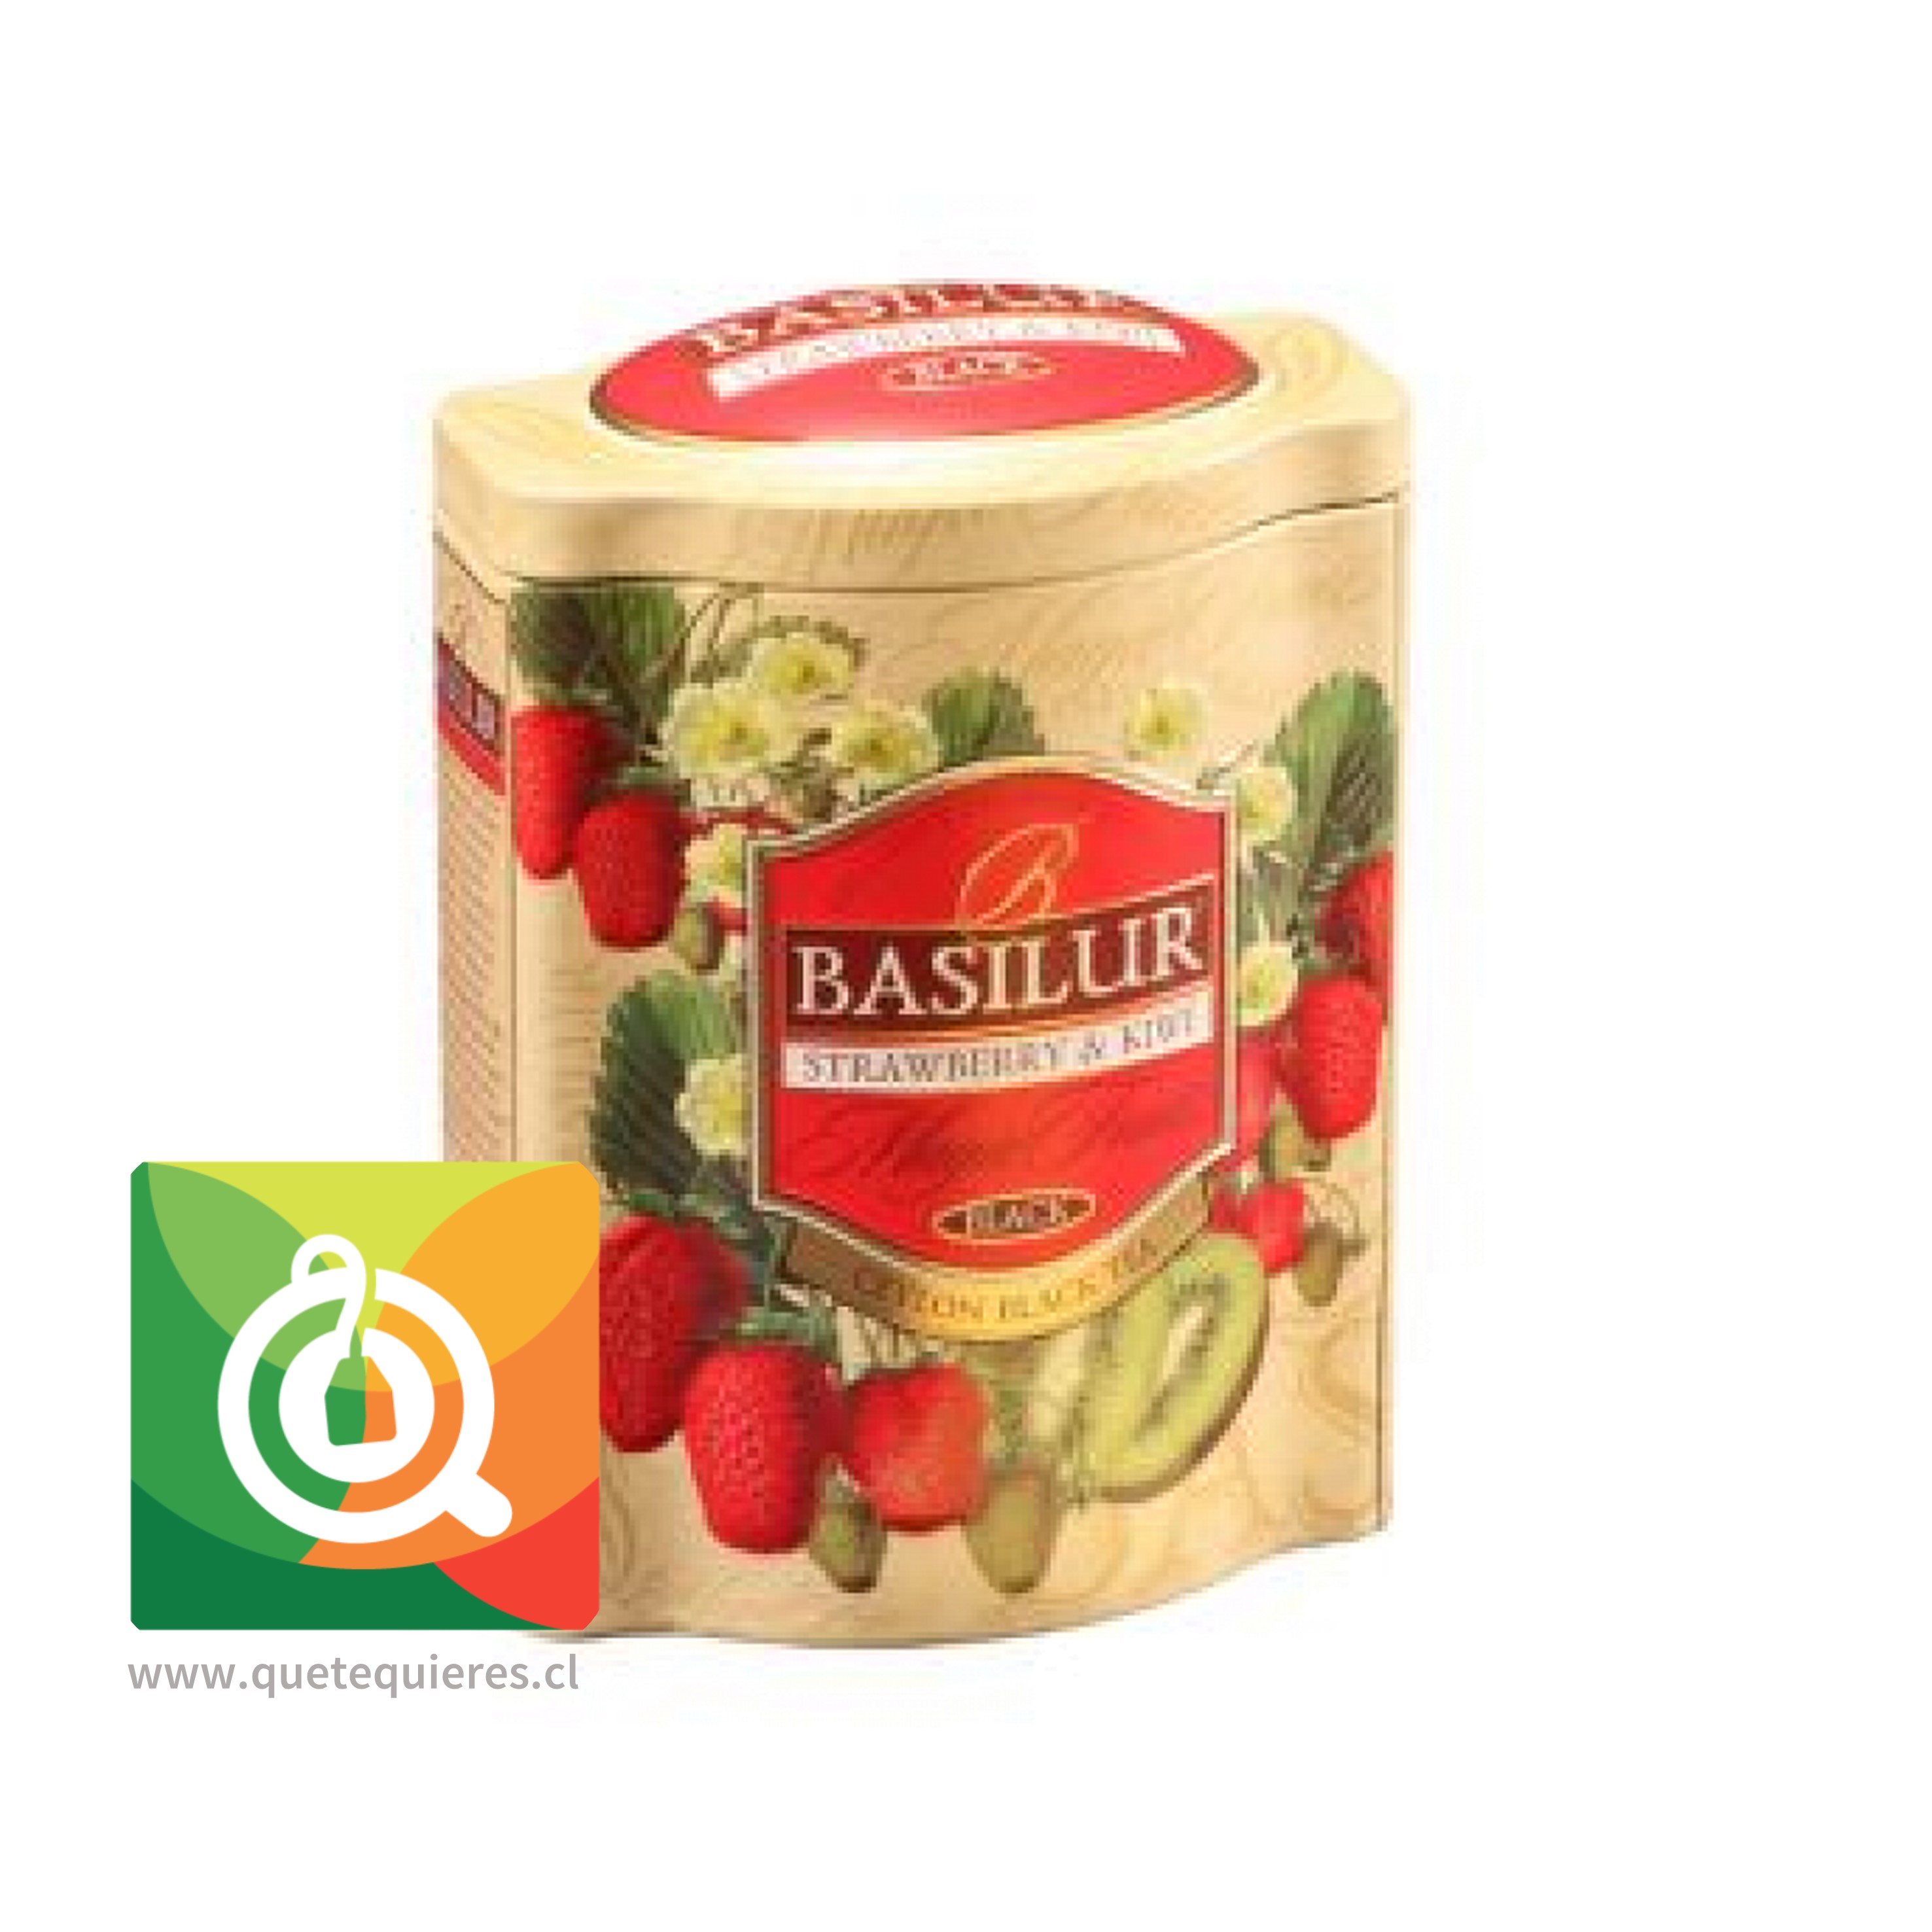 Basilur Lata Té Negro Frutilla y Kiwi - Magic Fruit Strawberry & Kiwi- Image 2